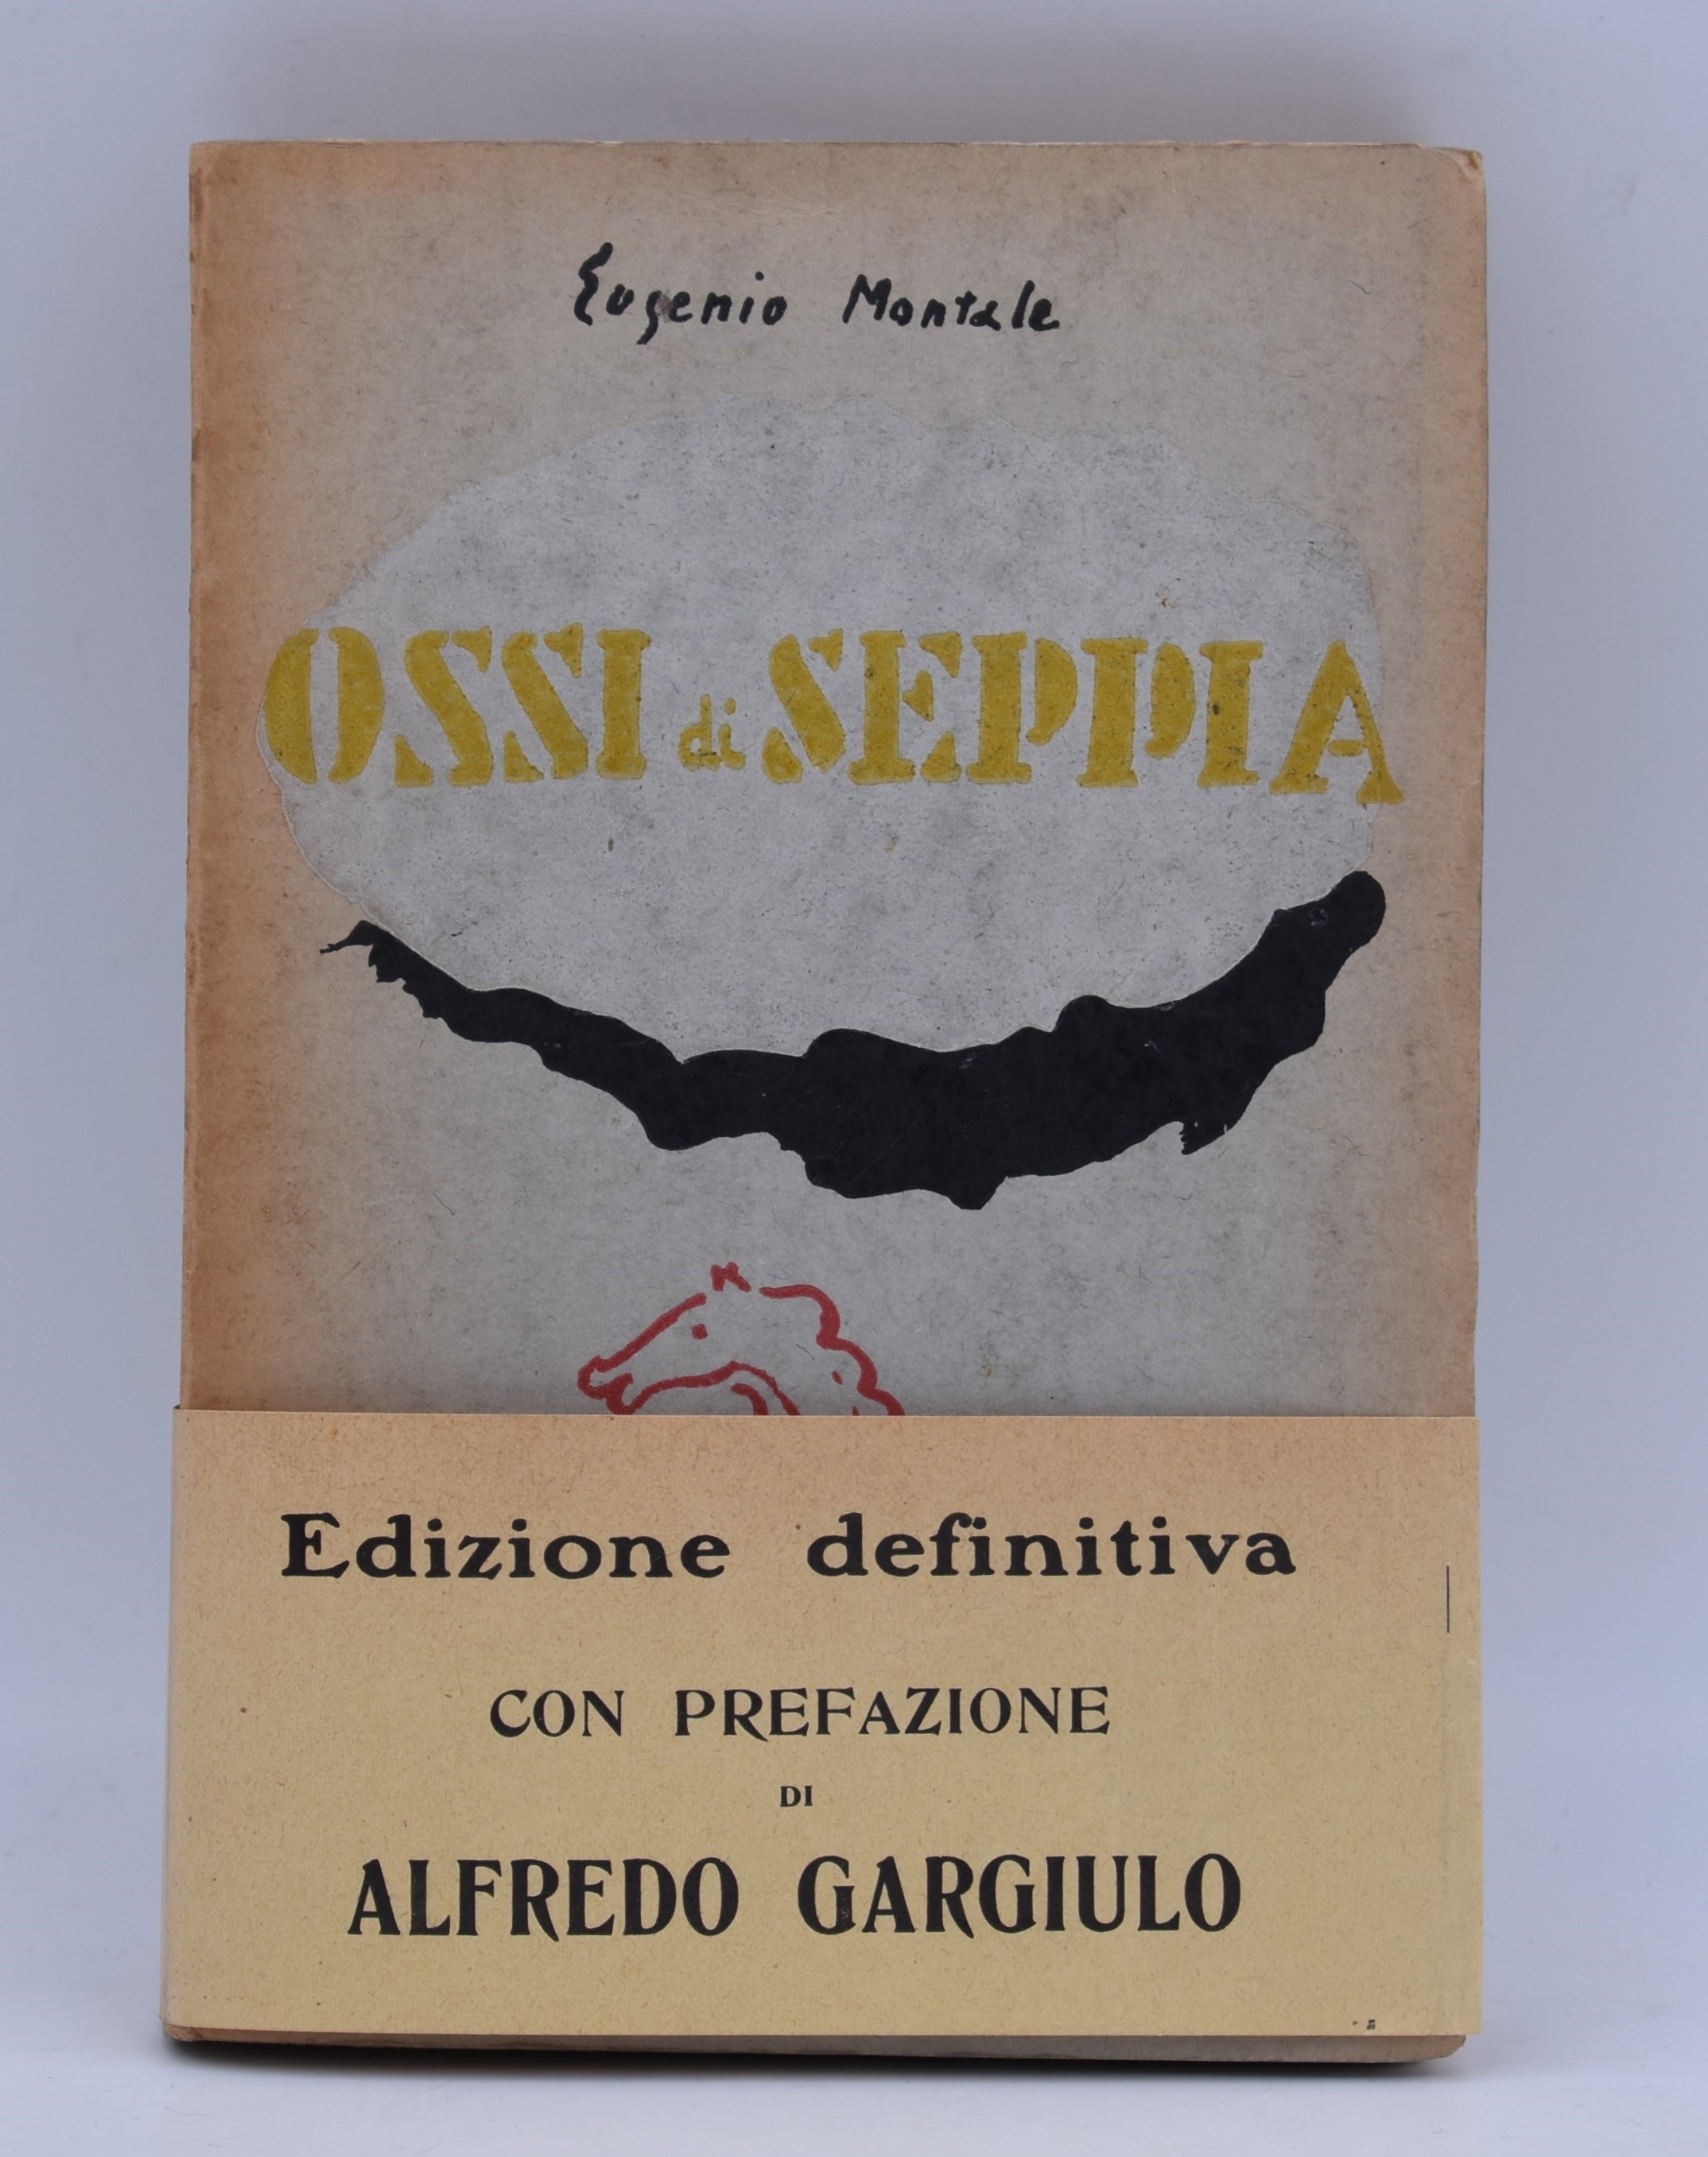 MONTALE, EUGENIO. OSSI DI SEPPIA. 1931 - Gino Bonichi